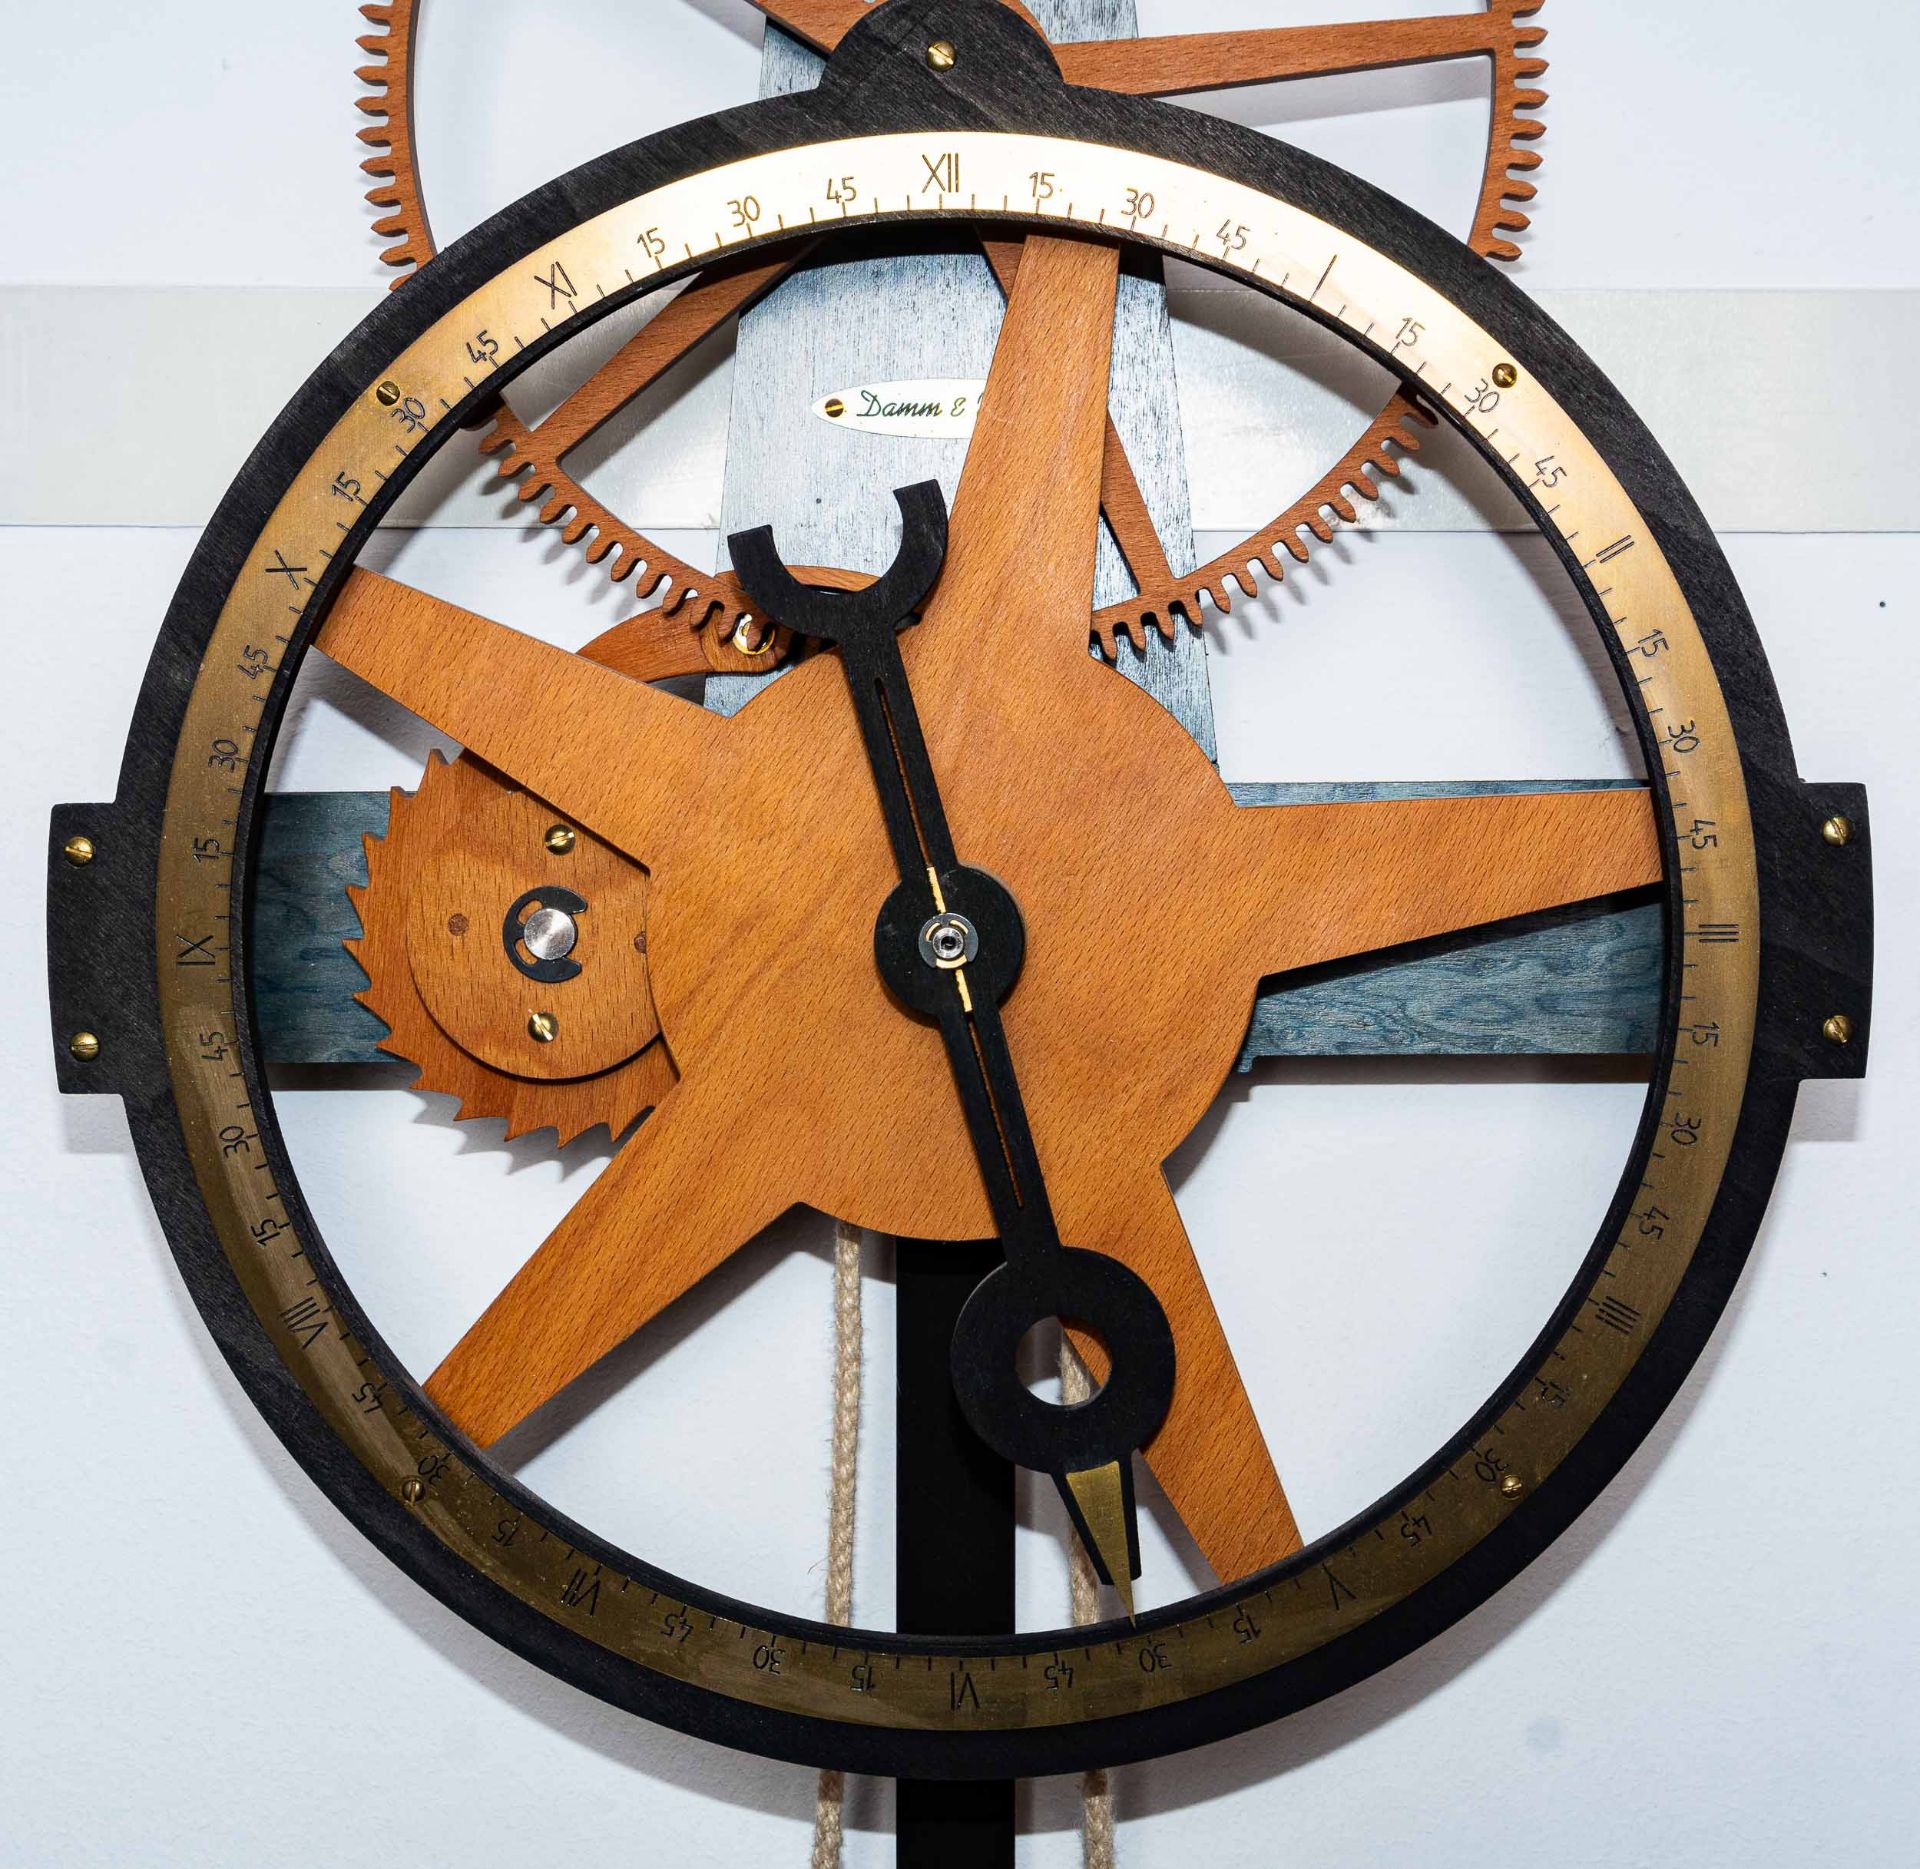 Hölzerne Wanduhr, 2 gewichtiges hölzernes Uhrwerk der Marke "Damm & Wolff", rüc - Bild 10 aus 12